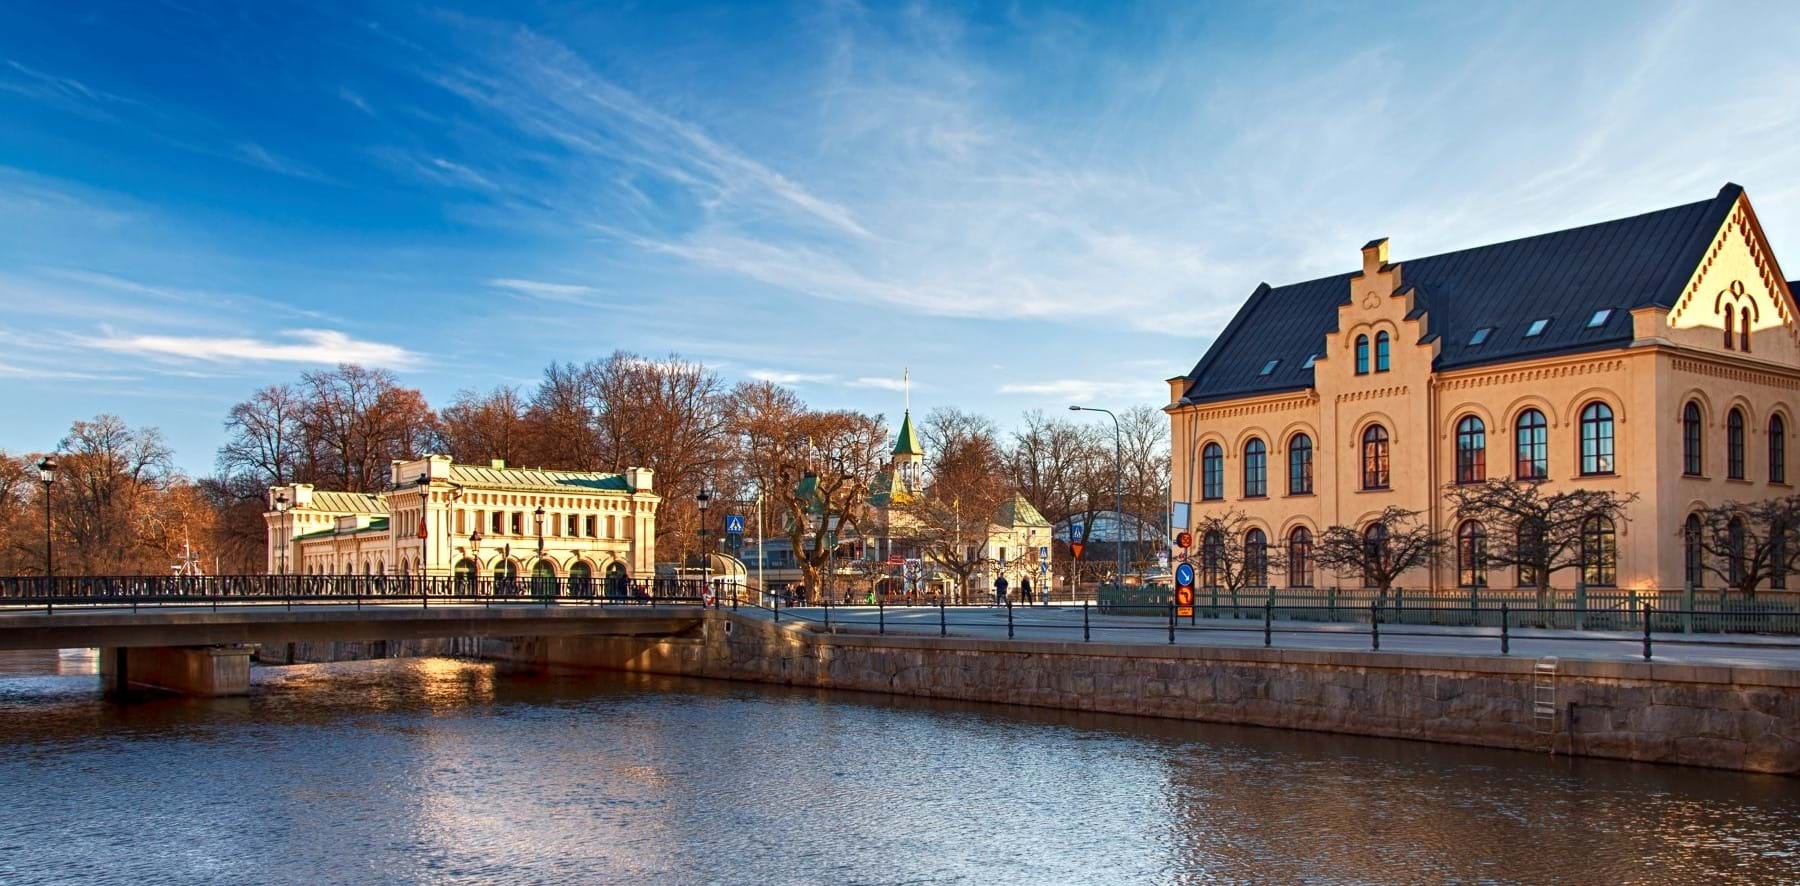 Bilde av Uppsala sentrum med bygninger ved elven. Foto: SophieMcAulay/Colourbox